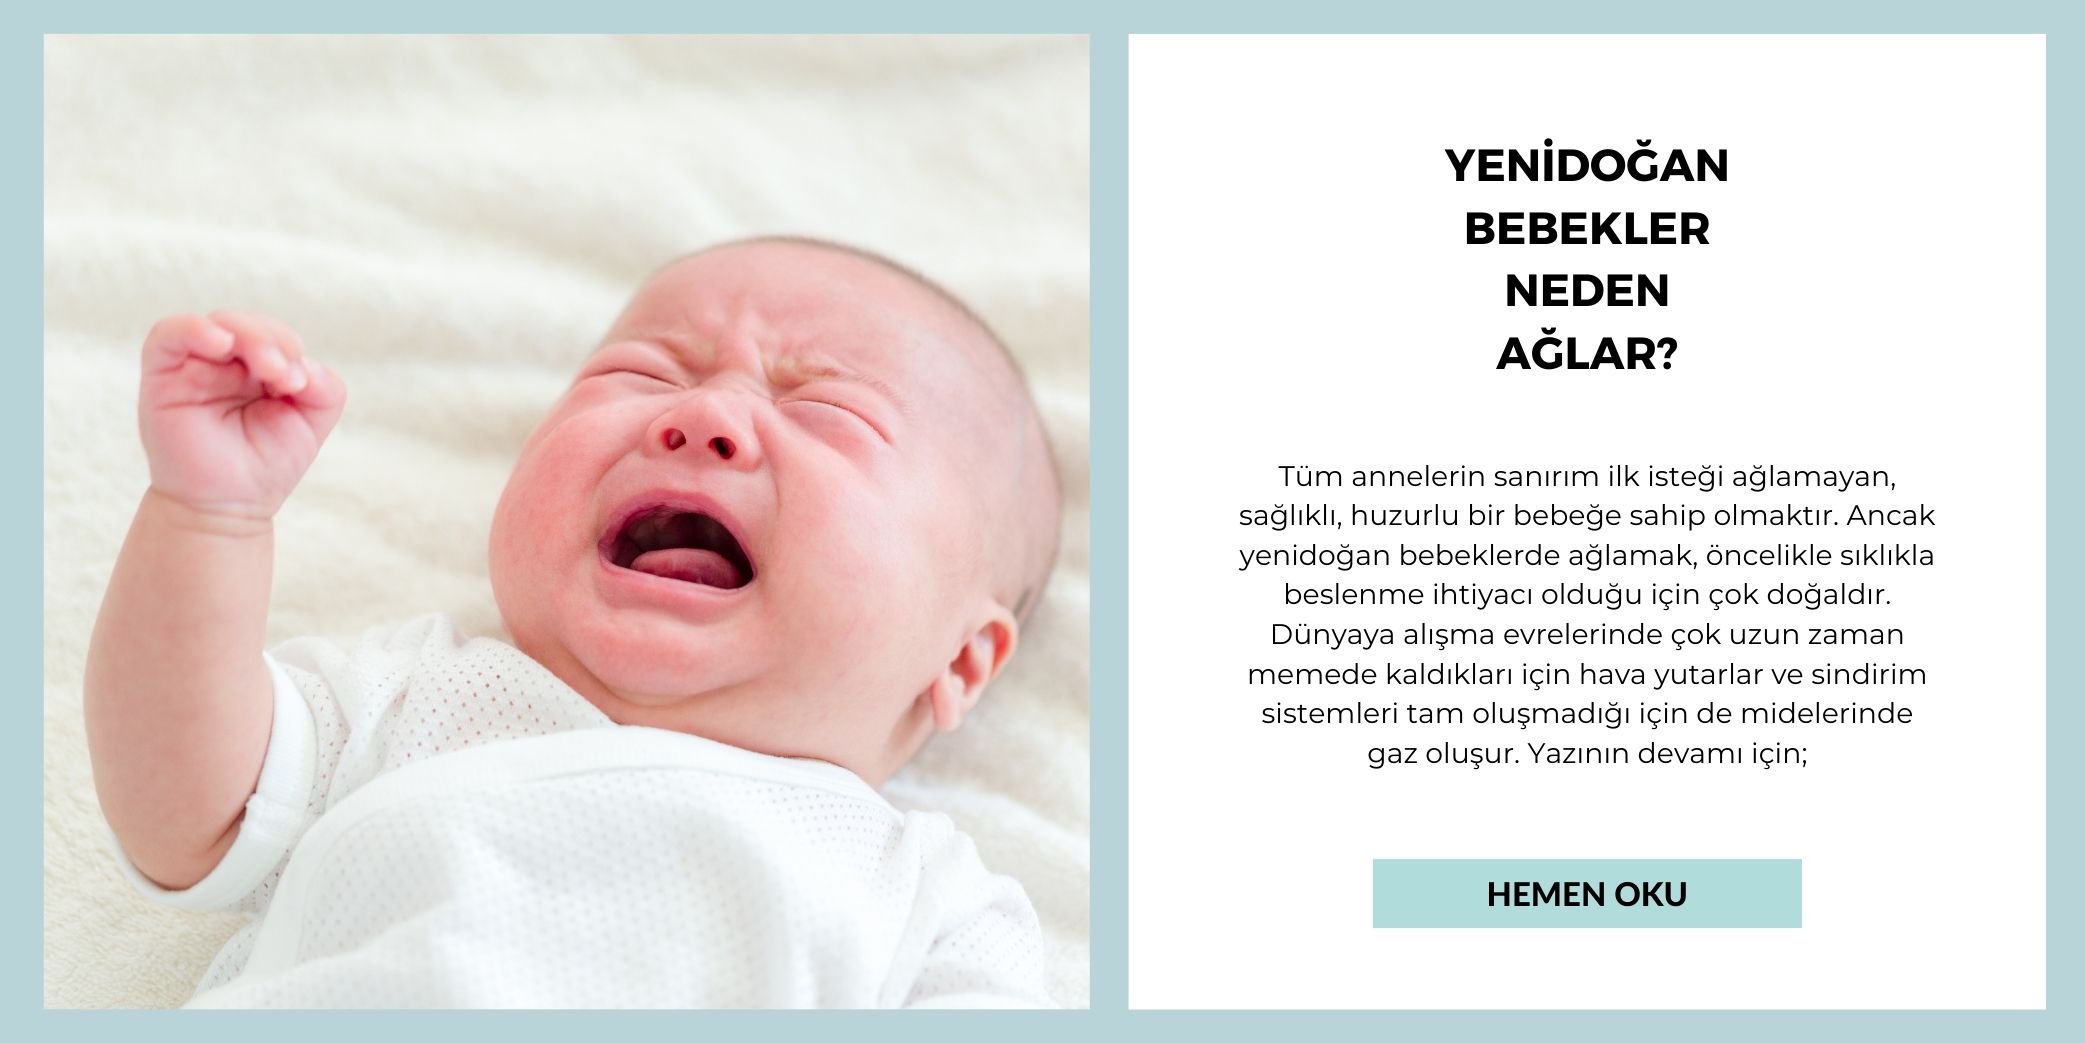 Yenidoğan bebekler neden ağlar?